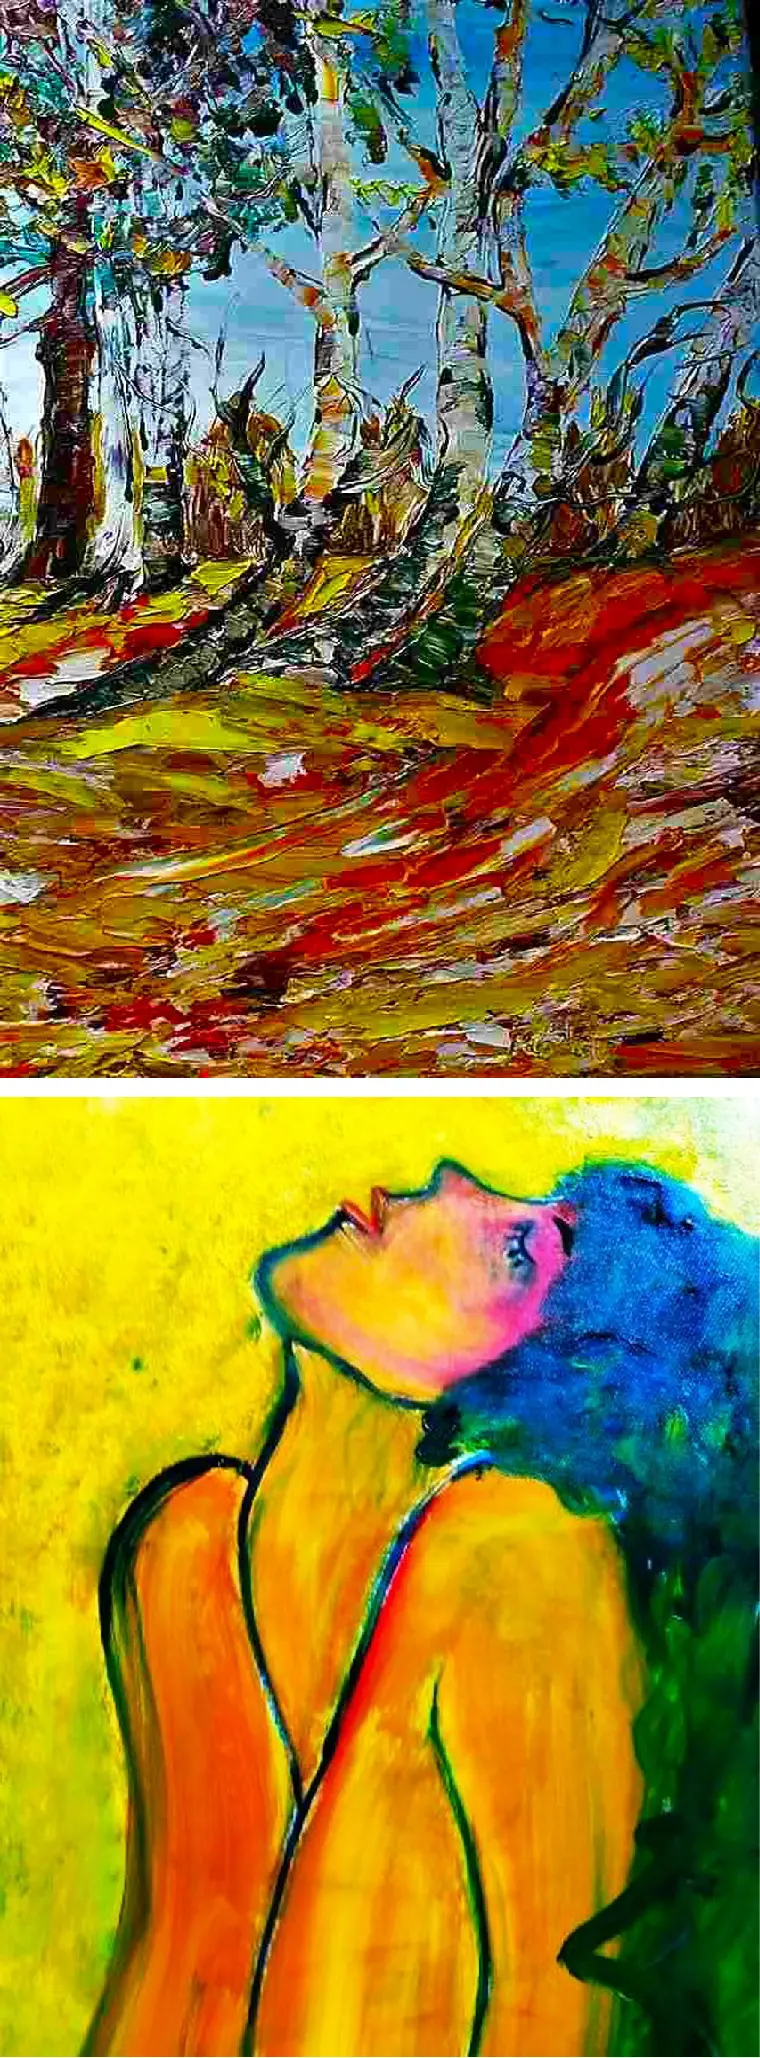 Bild oben: "Herbststimmung" Öl auf Leinwand, 50 x 60 cm von Armgard Röhl / Bild unten "Frauenkopf" Öl auf Leinwand, 60 x 70 cm von Armgard Röhl